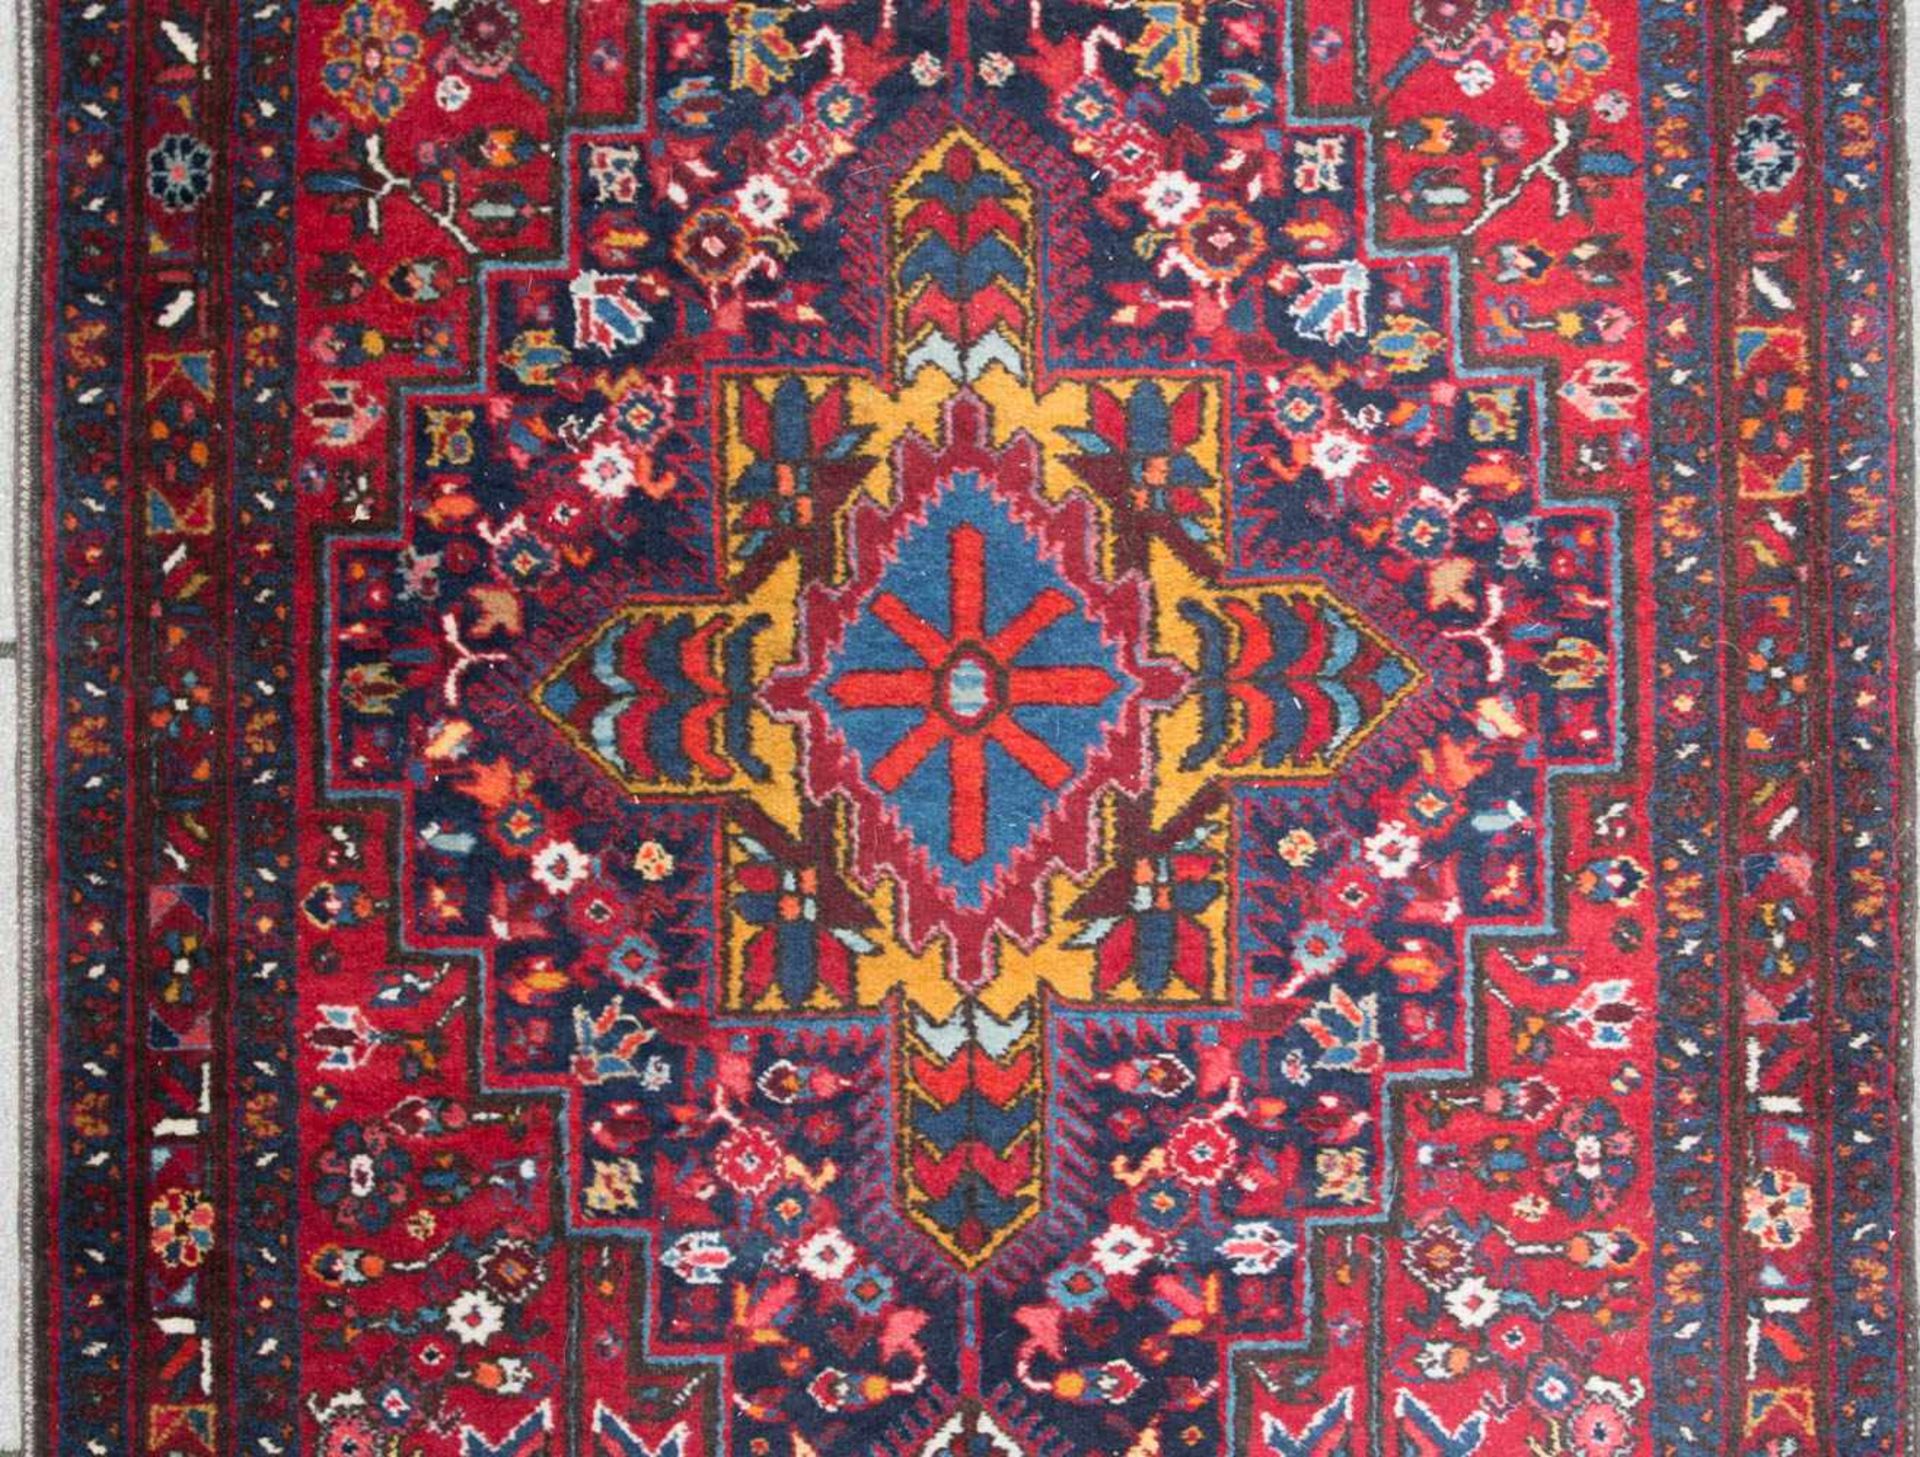 Hamadan Teppich, Baumwolle. - Bild 3 aus 6